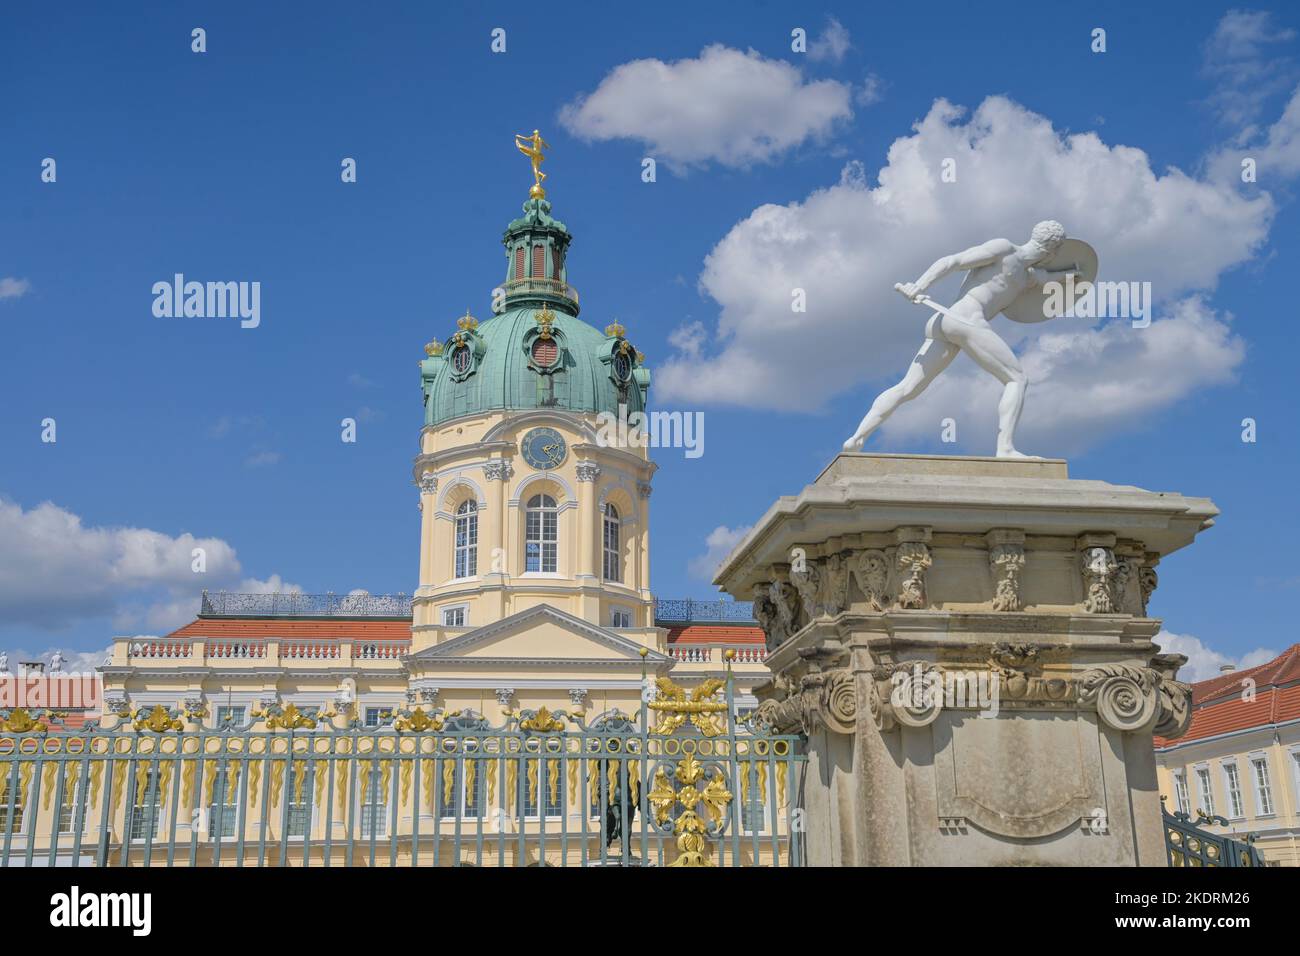 Figur, Kämpfer mit Schild, Schloss Charlottenburg, Spandauer Damm, Charlottenburg, Berlin, Deutschland Stock Photo